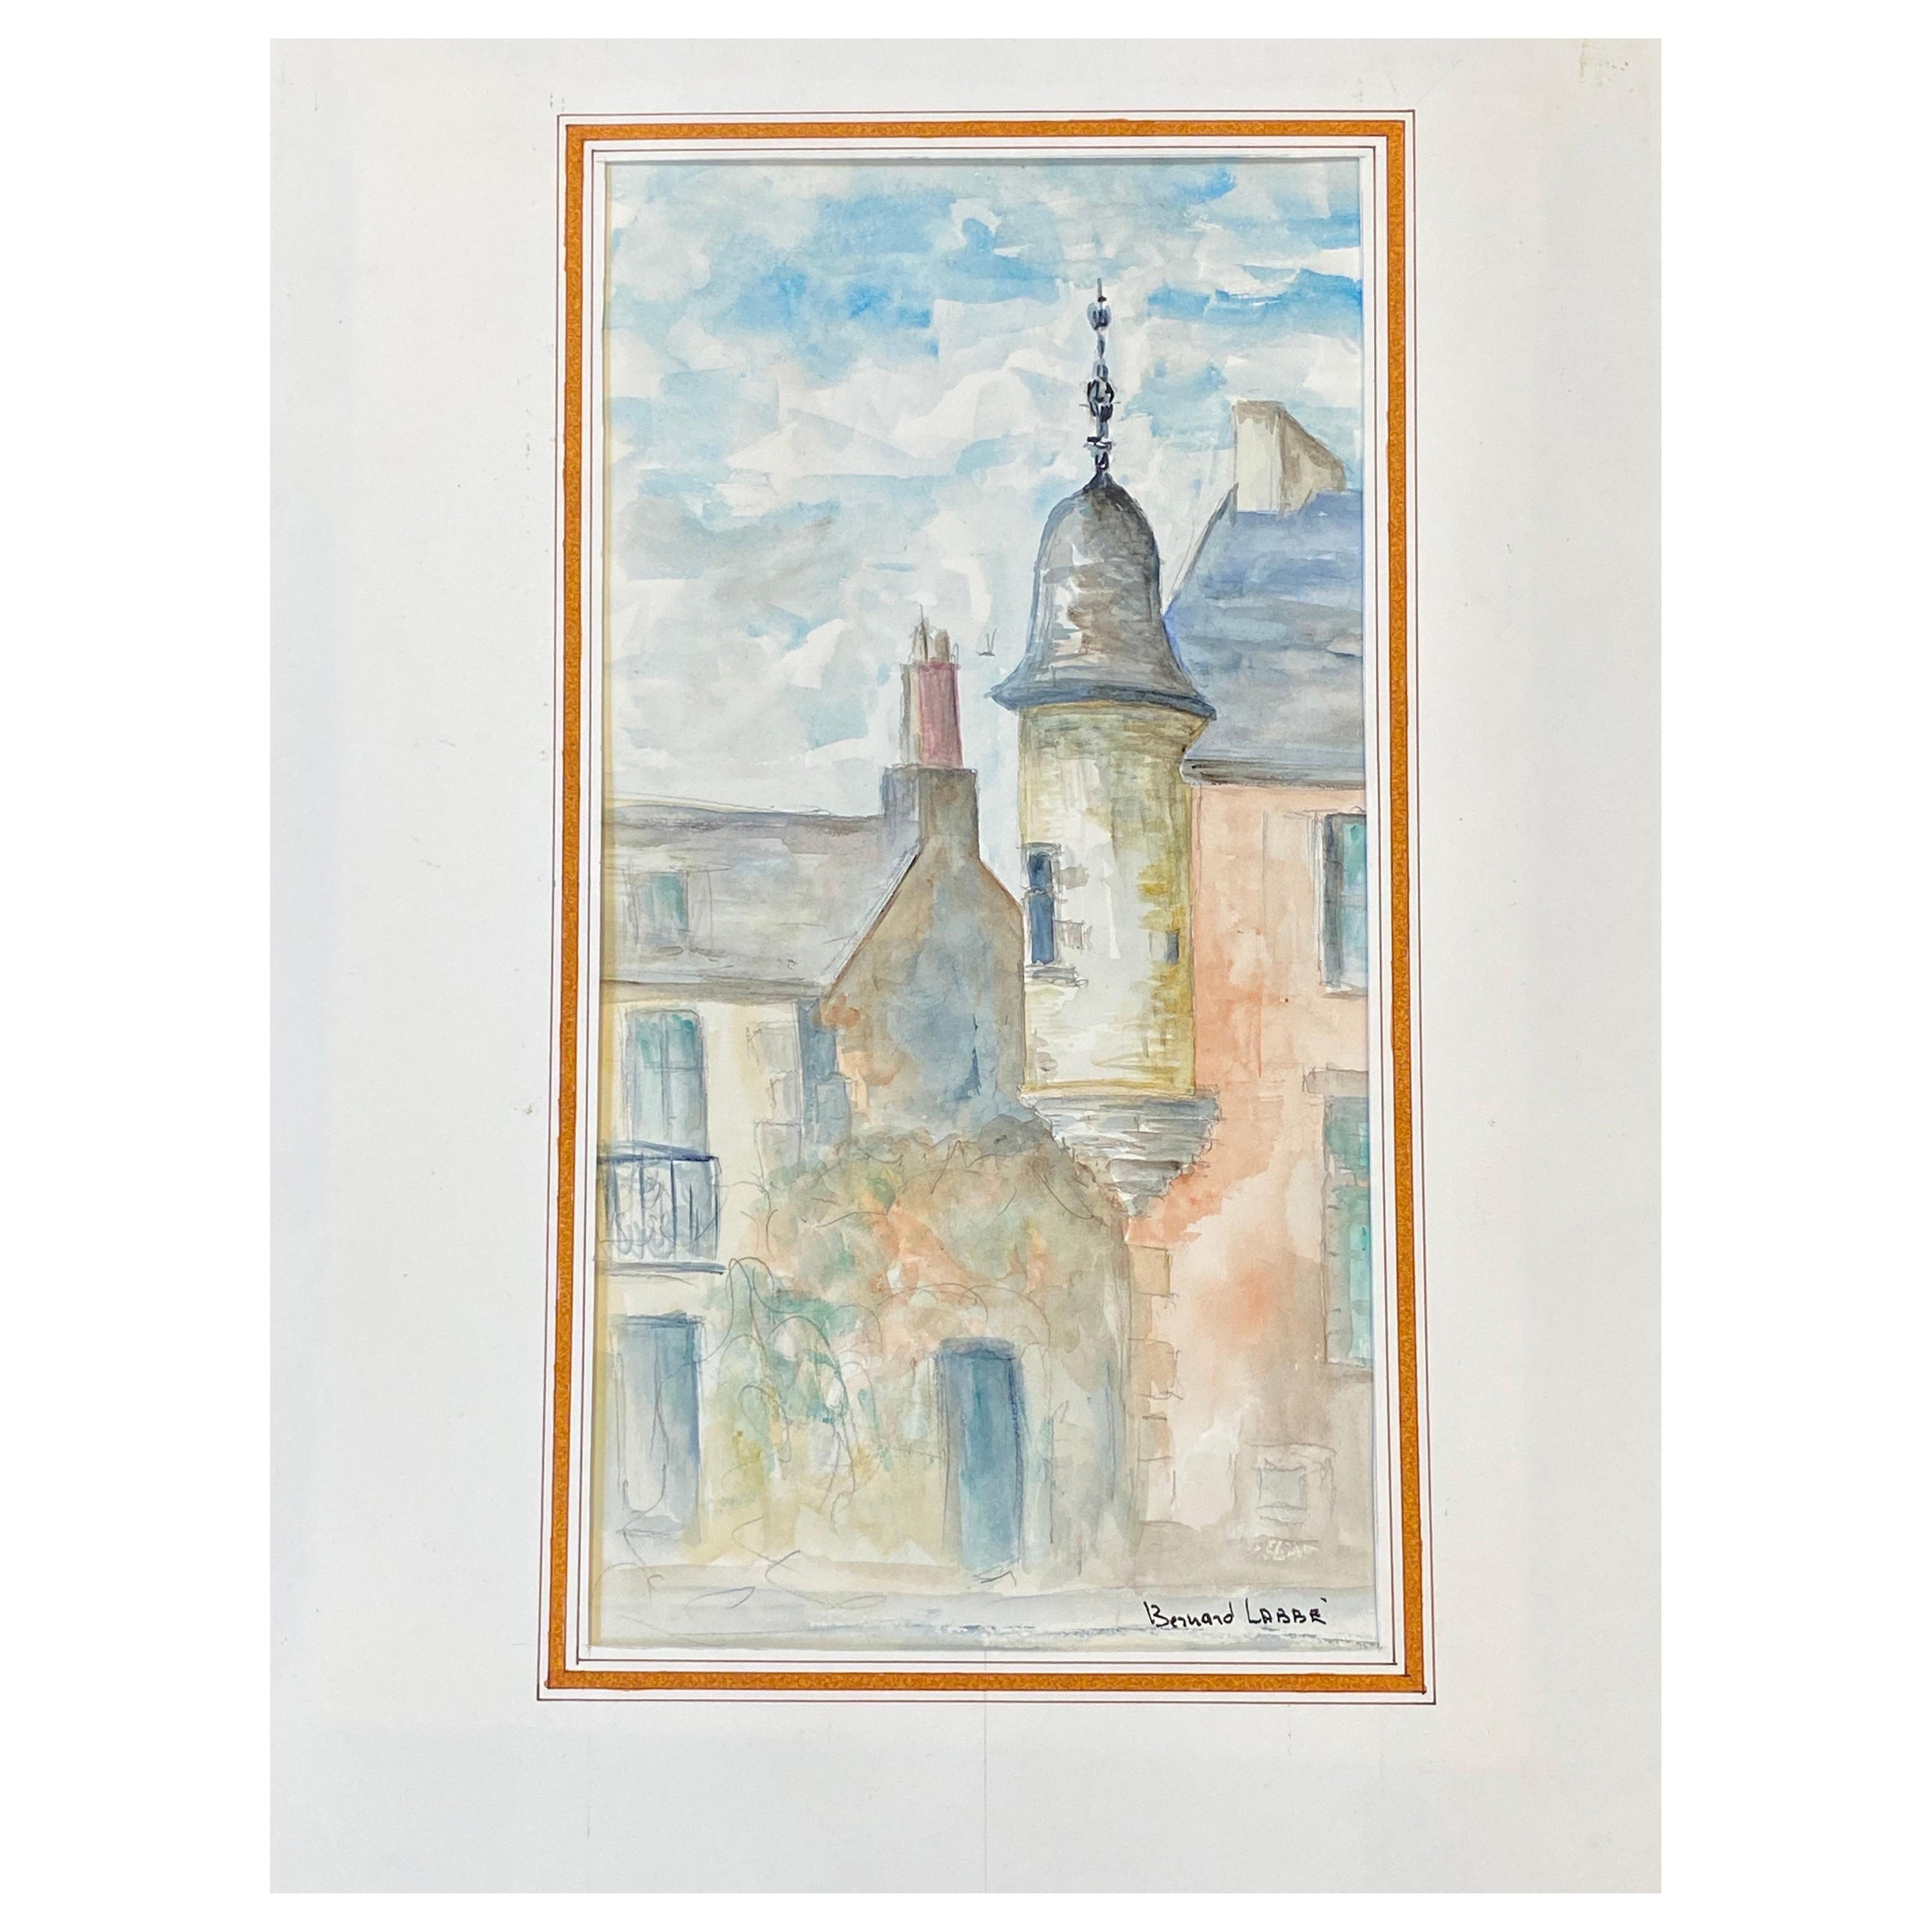 Französisches modernistisches/ kubistisches Gemälde der 1950er Jahre, signiert, helle Farben, französische Gebäude